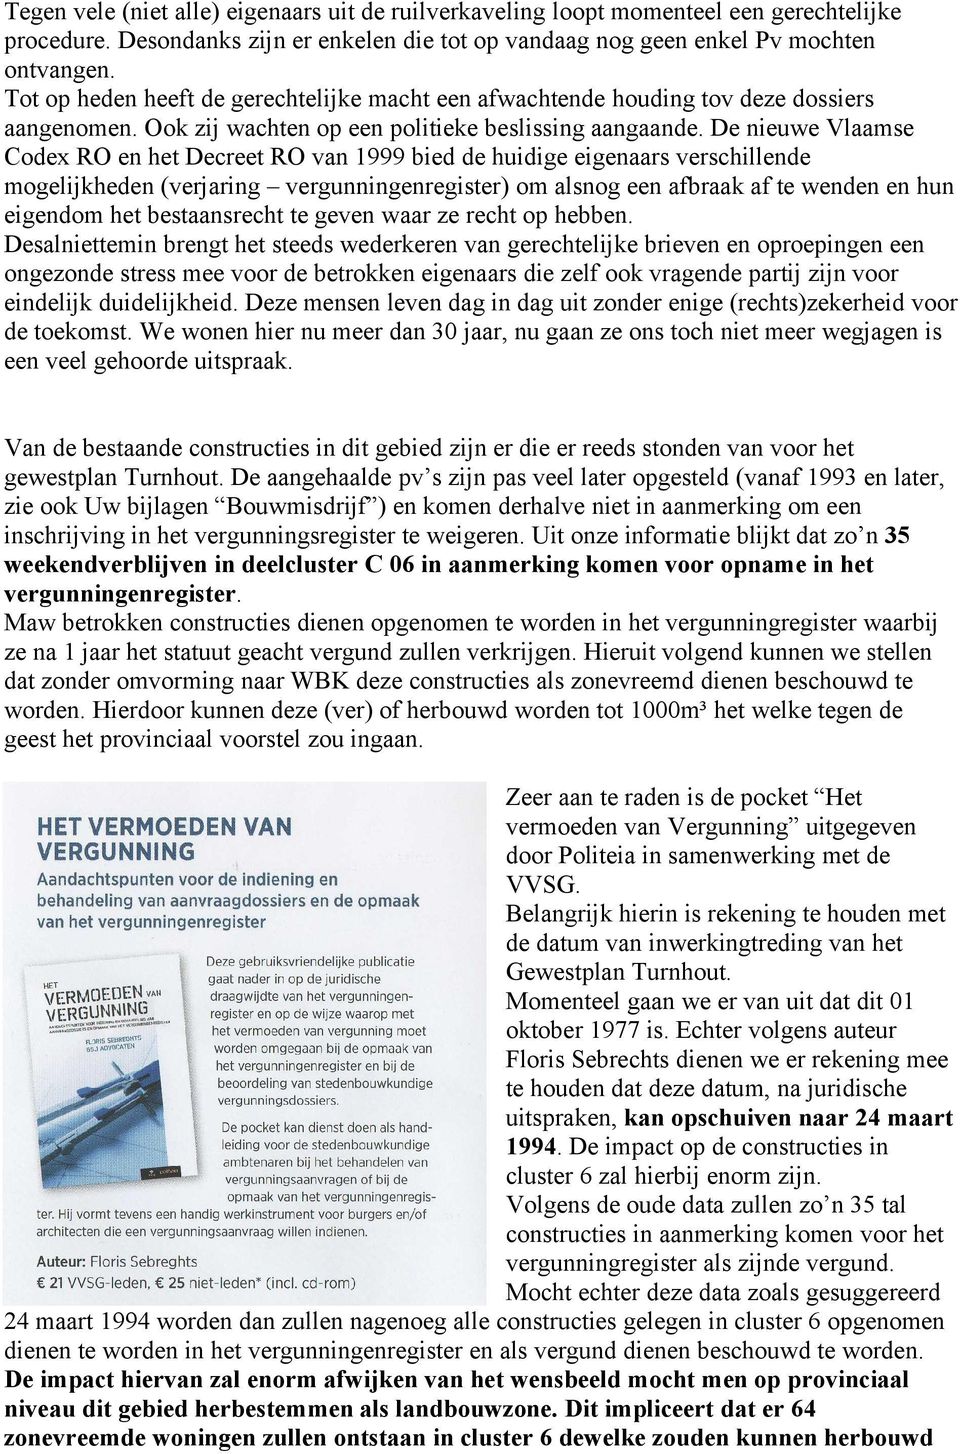 De nieuwe Vlaamse Codex RO en het Decreet RO van 1999 bied de huidige eigenaars verschillende mogelijkheden (verjaring vergunningenregister) om alsnog een afbraak af te wenden en hun eigendom het